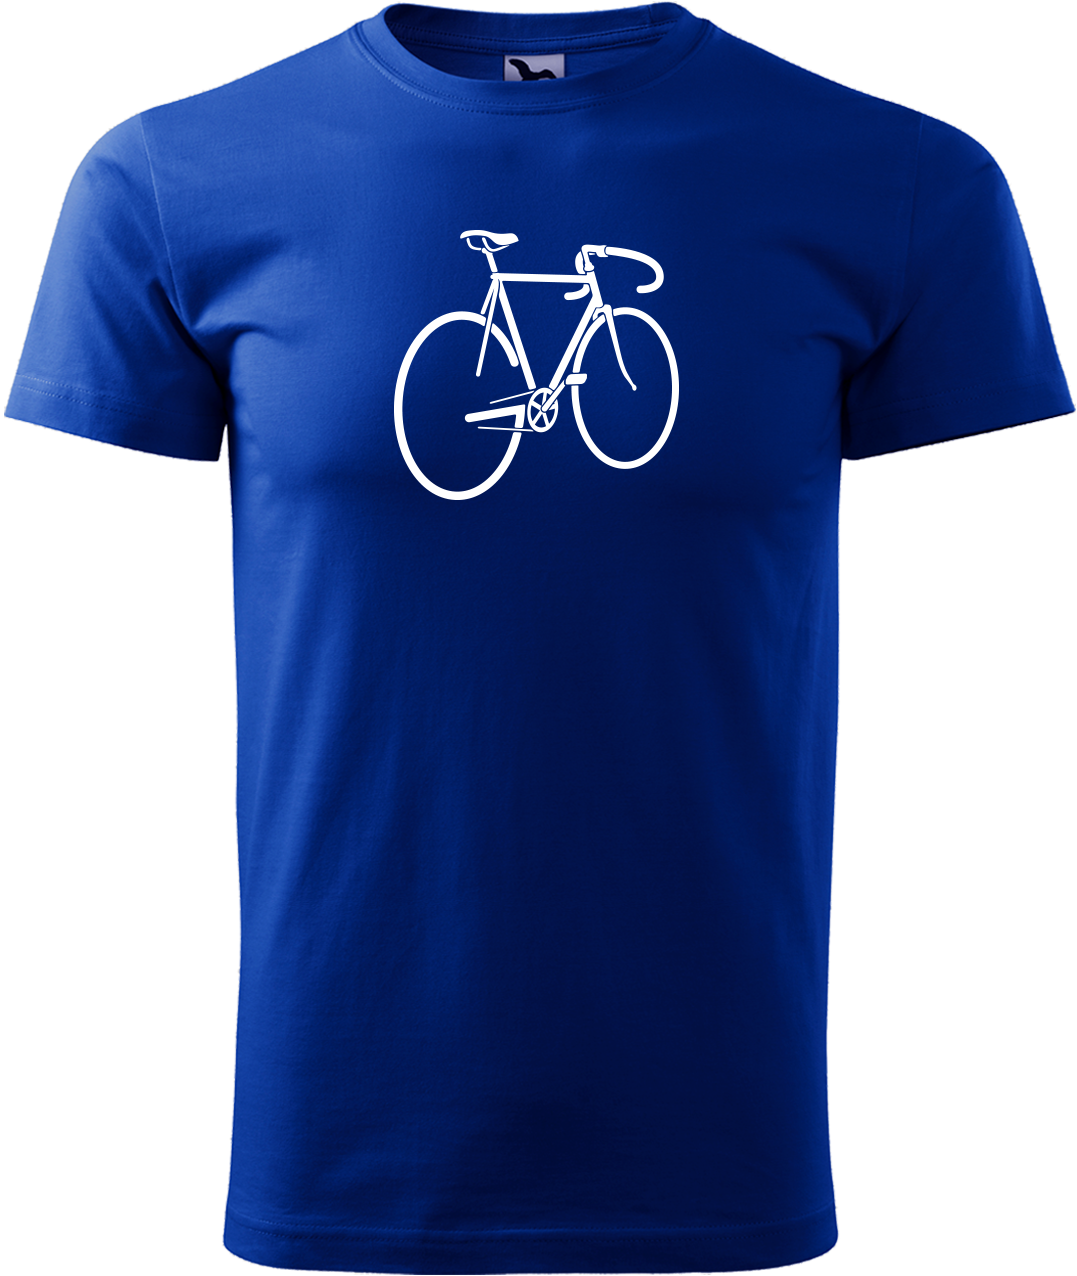 Pánské tričko s kolem - Pánské kolo Velikost: M, Barva: Královská modrá (05)